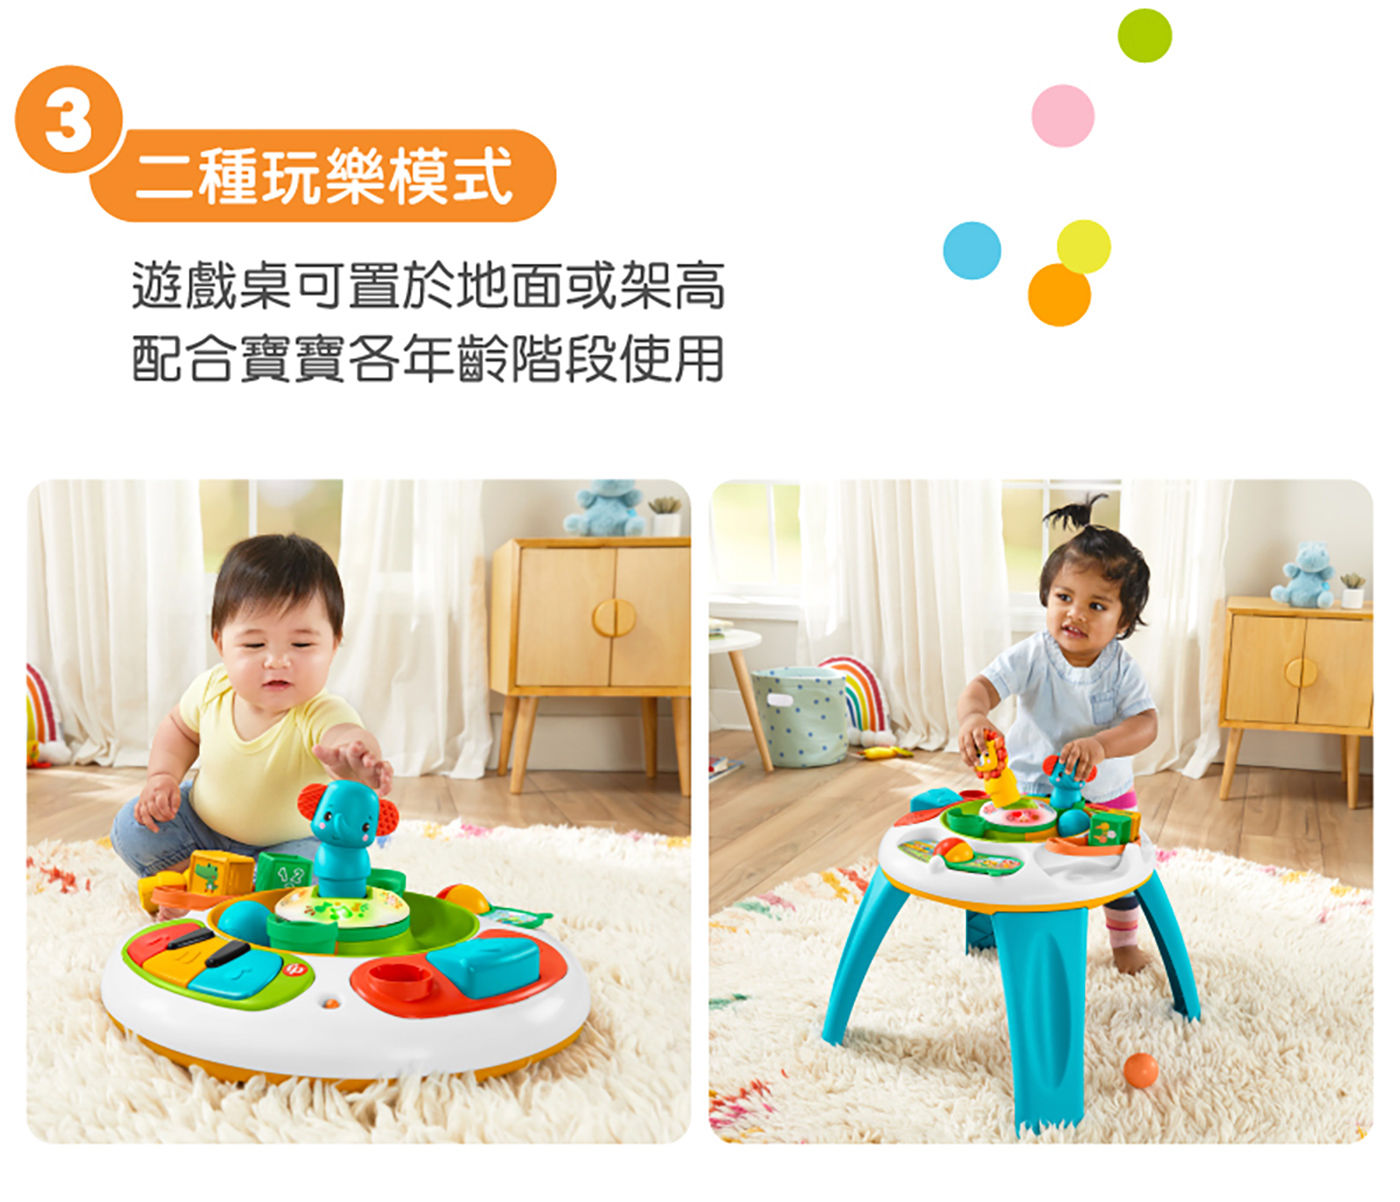 費雪 動物學習遊戲桌二種玩樂模式遊戲桌可置於地面或架高配合寶寶各年齡層階段使用